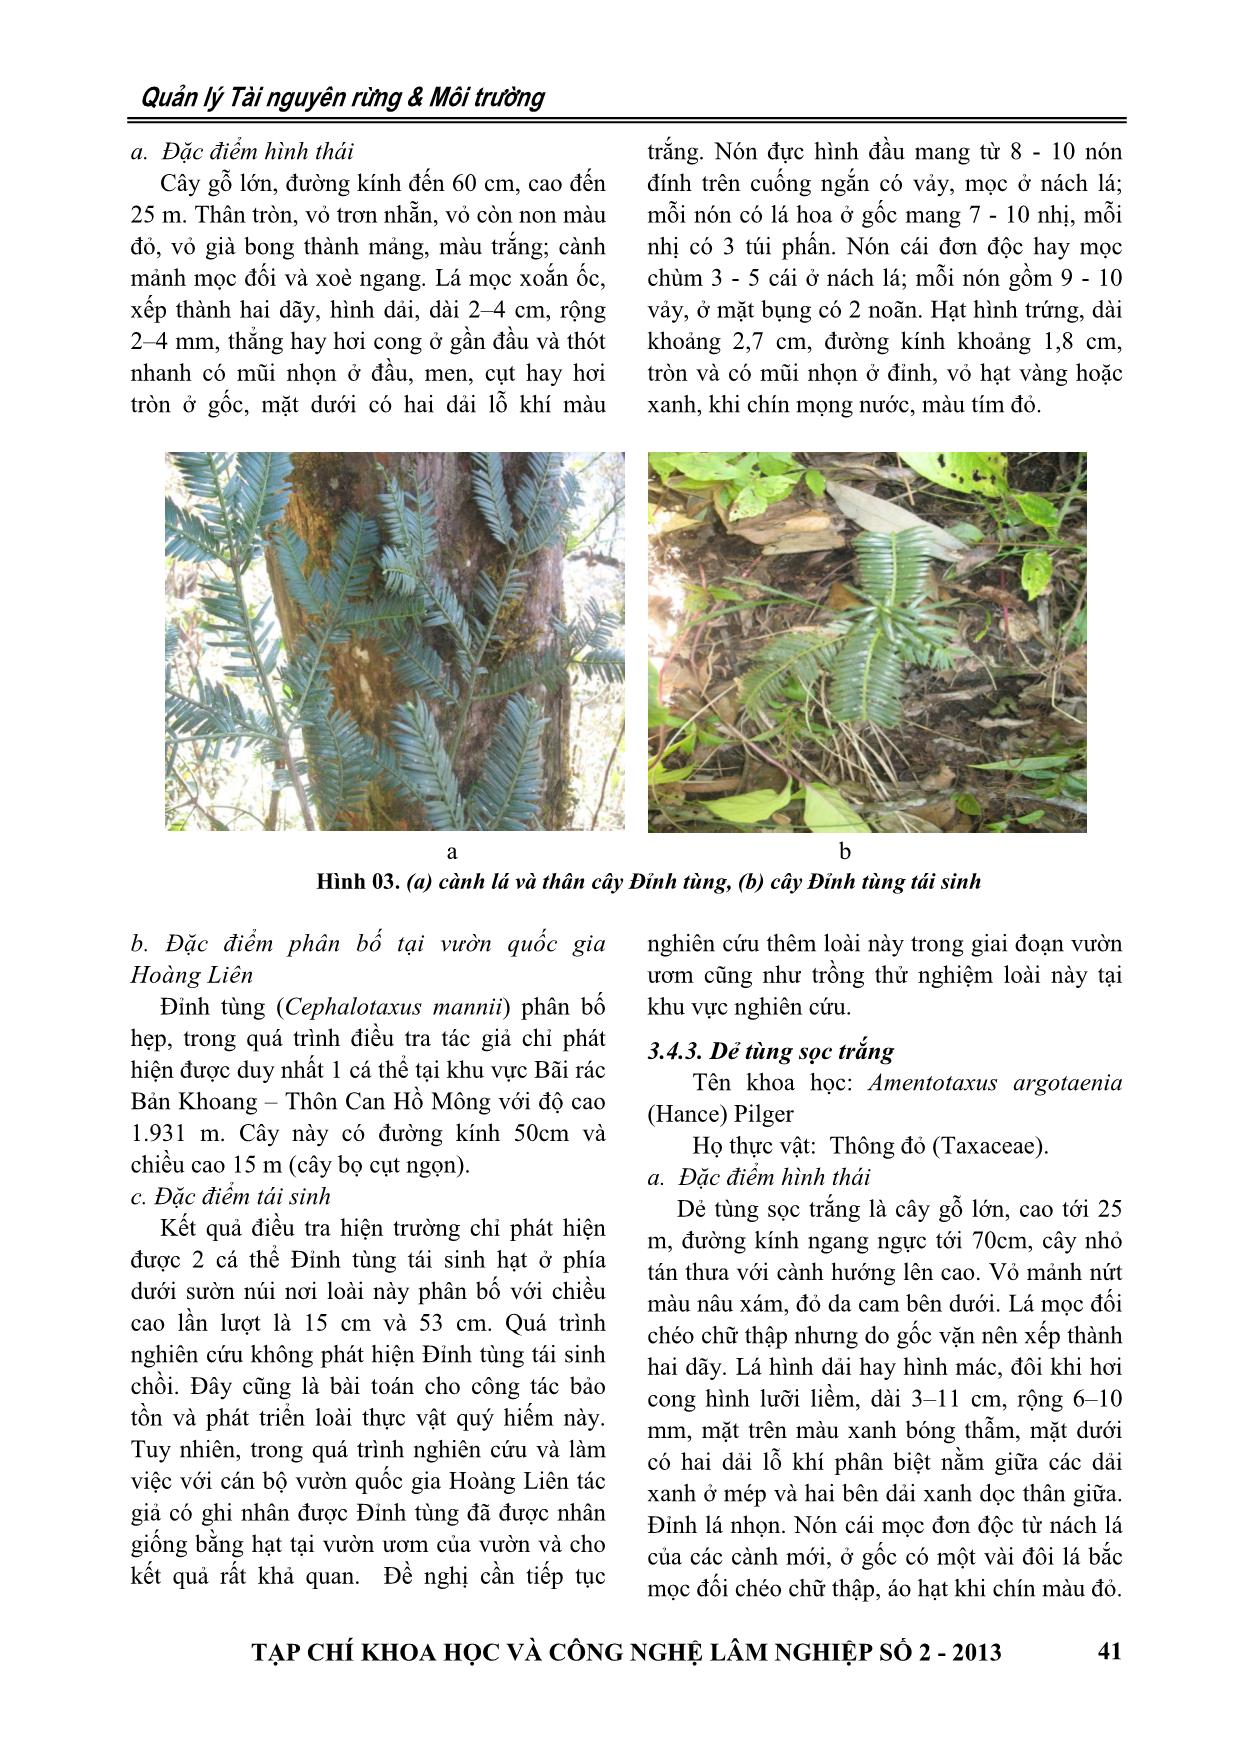 Thành phần loài và hiện trạng bảo tồn thực vật ngành hạt trần (Gymnosperm) tại Vườn quốc gia Hoàng Liên trang 6